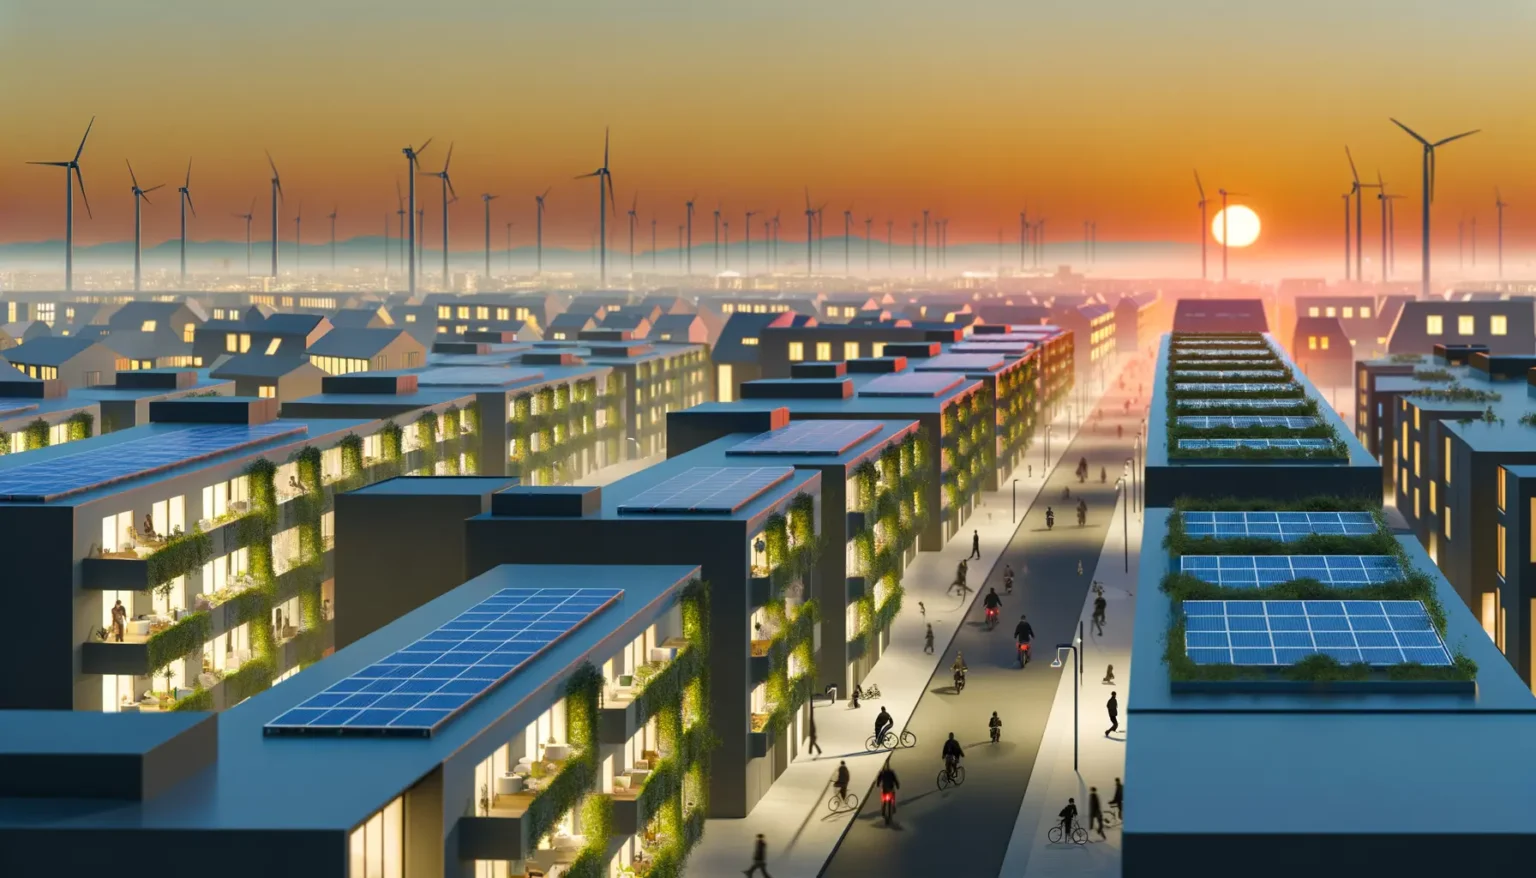 Blick auf eine moderne, nachhaltige Stadt bei Sonnenuntergang mit mehrstöckigen Gebäuden, auf deren Dächern Solarmodule und begrünte Flächen sind; im Hintergrund Windkraftanlagen und ein leuchtend orange-rot gefärbter Himmel über dem Horizont.